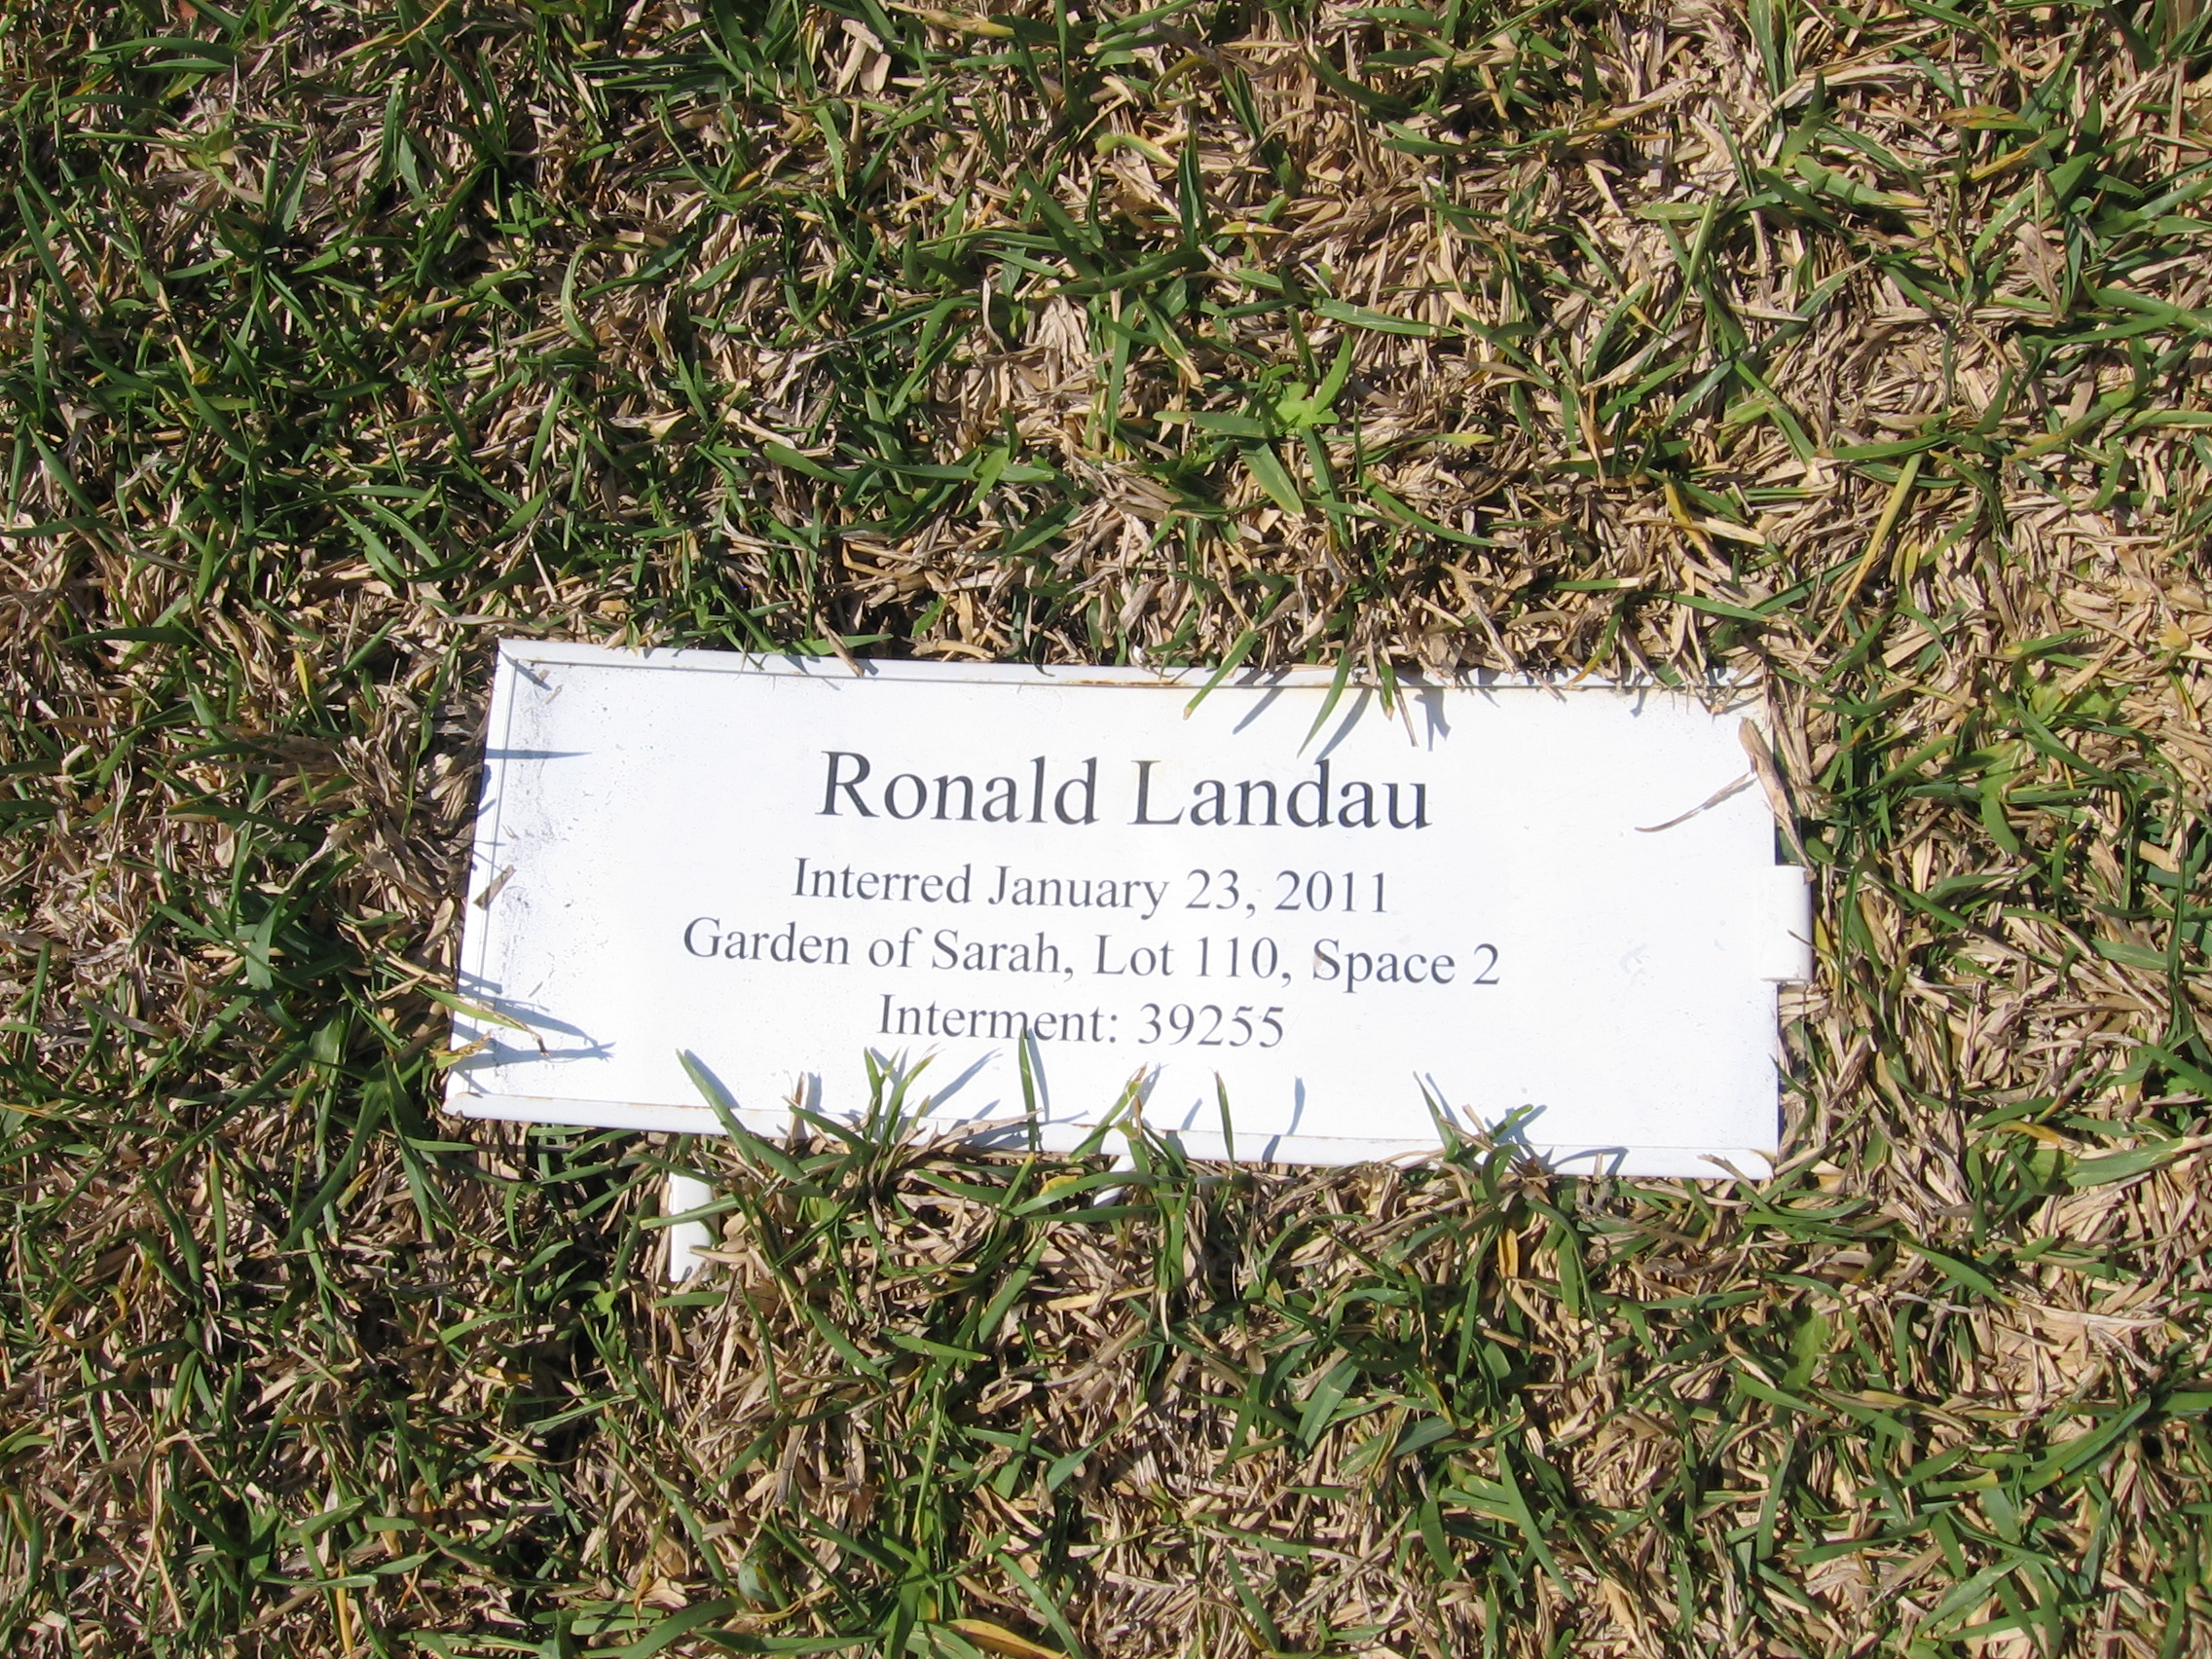 Ronald Landau